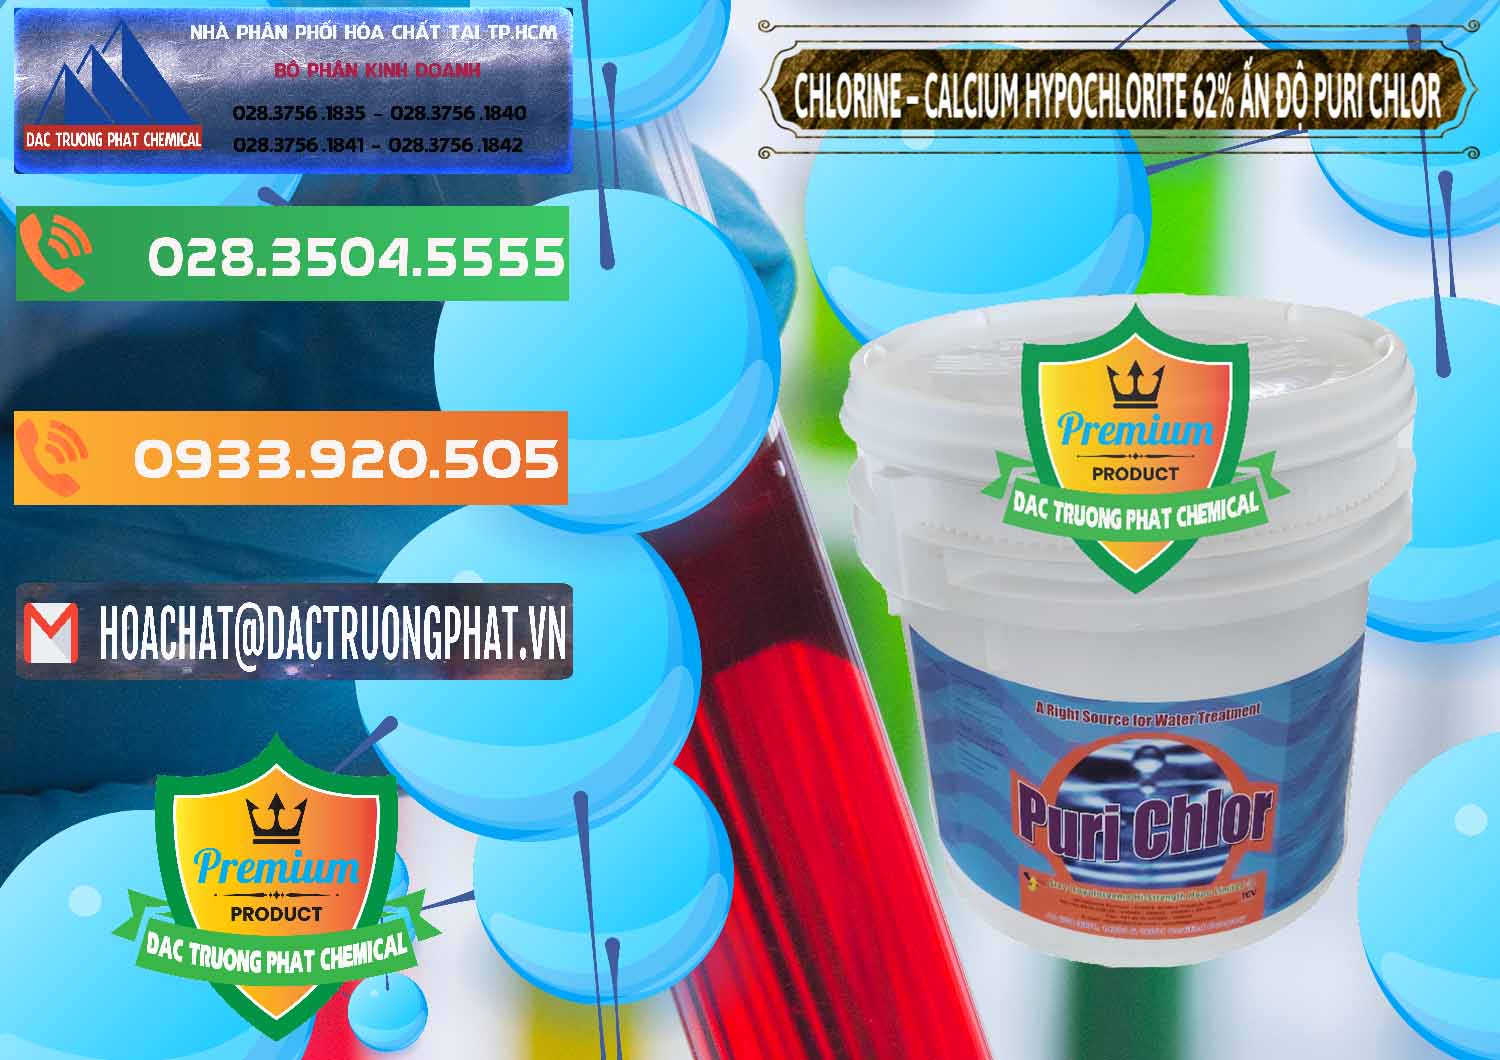 Nơi bán - cung ứng Chlorine – Clorin 62% Puri Chlo Ấn Độ India - 0052 - Kinh doanh ( cung cấp ) hóa chất tại TP.HCM - hoachatxulynuoc.com.vn